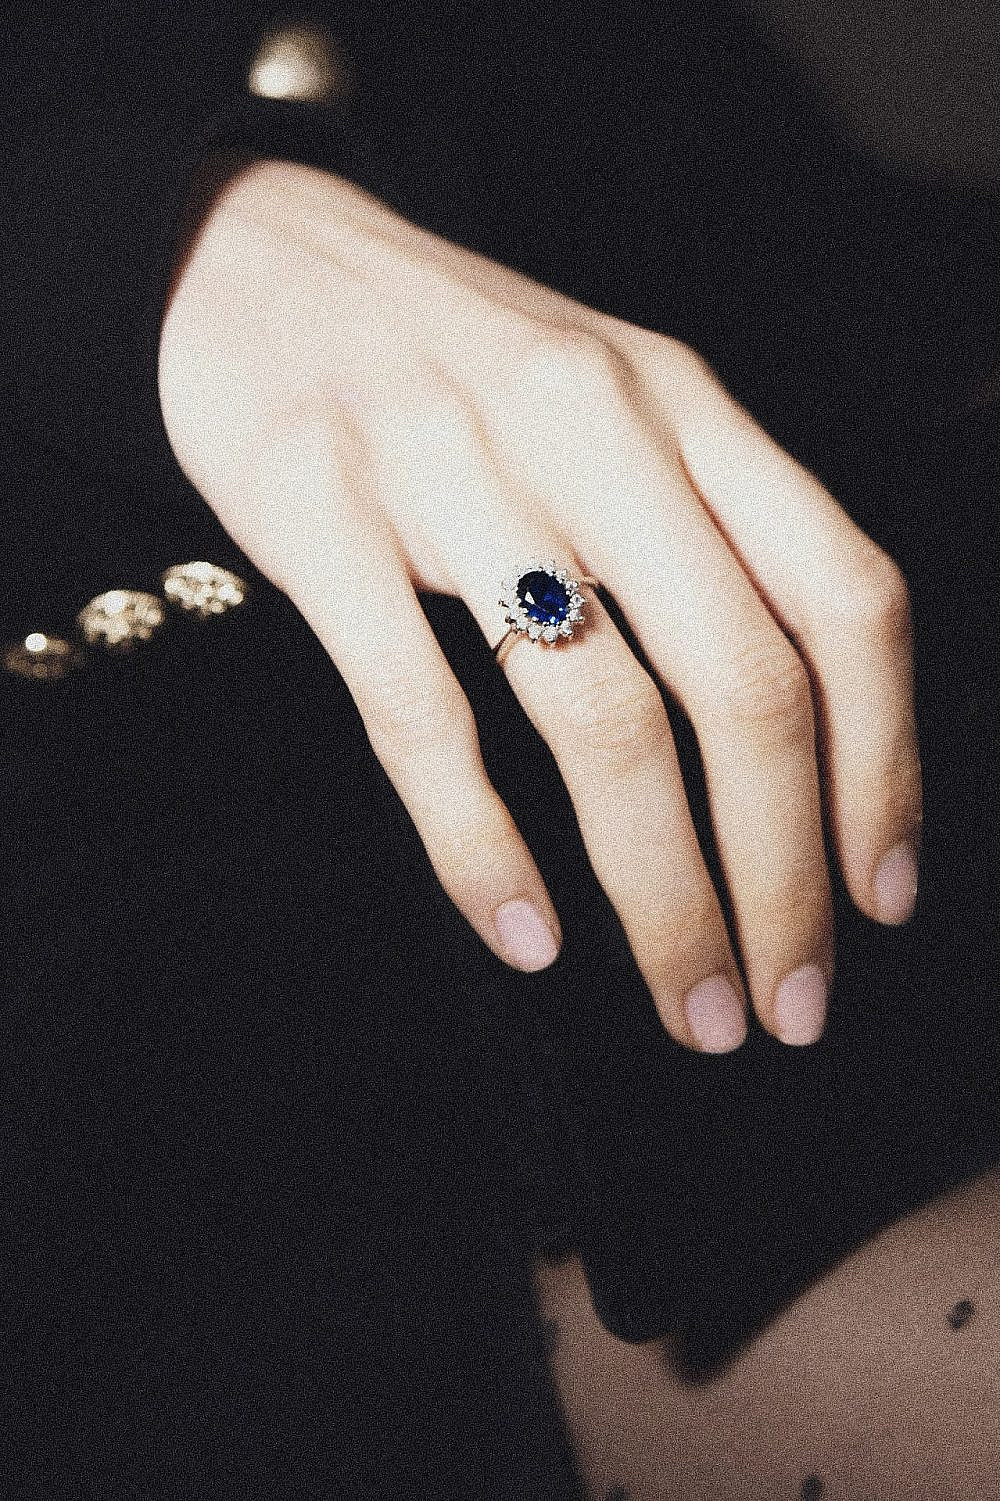 הפקת אופנה הנסיכה דיאנה | צילום: איציק נבון, טבעת: אוסף פרטי